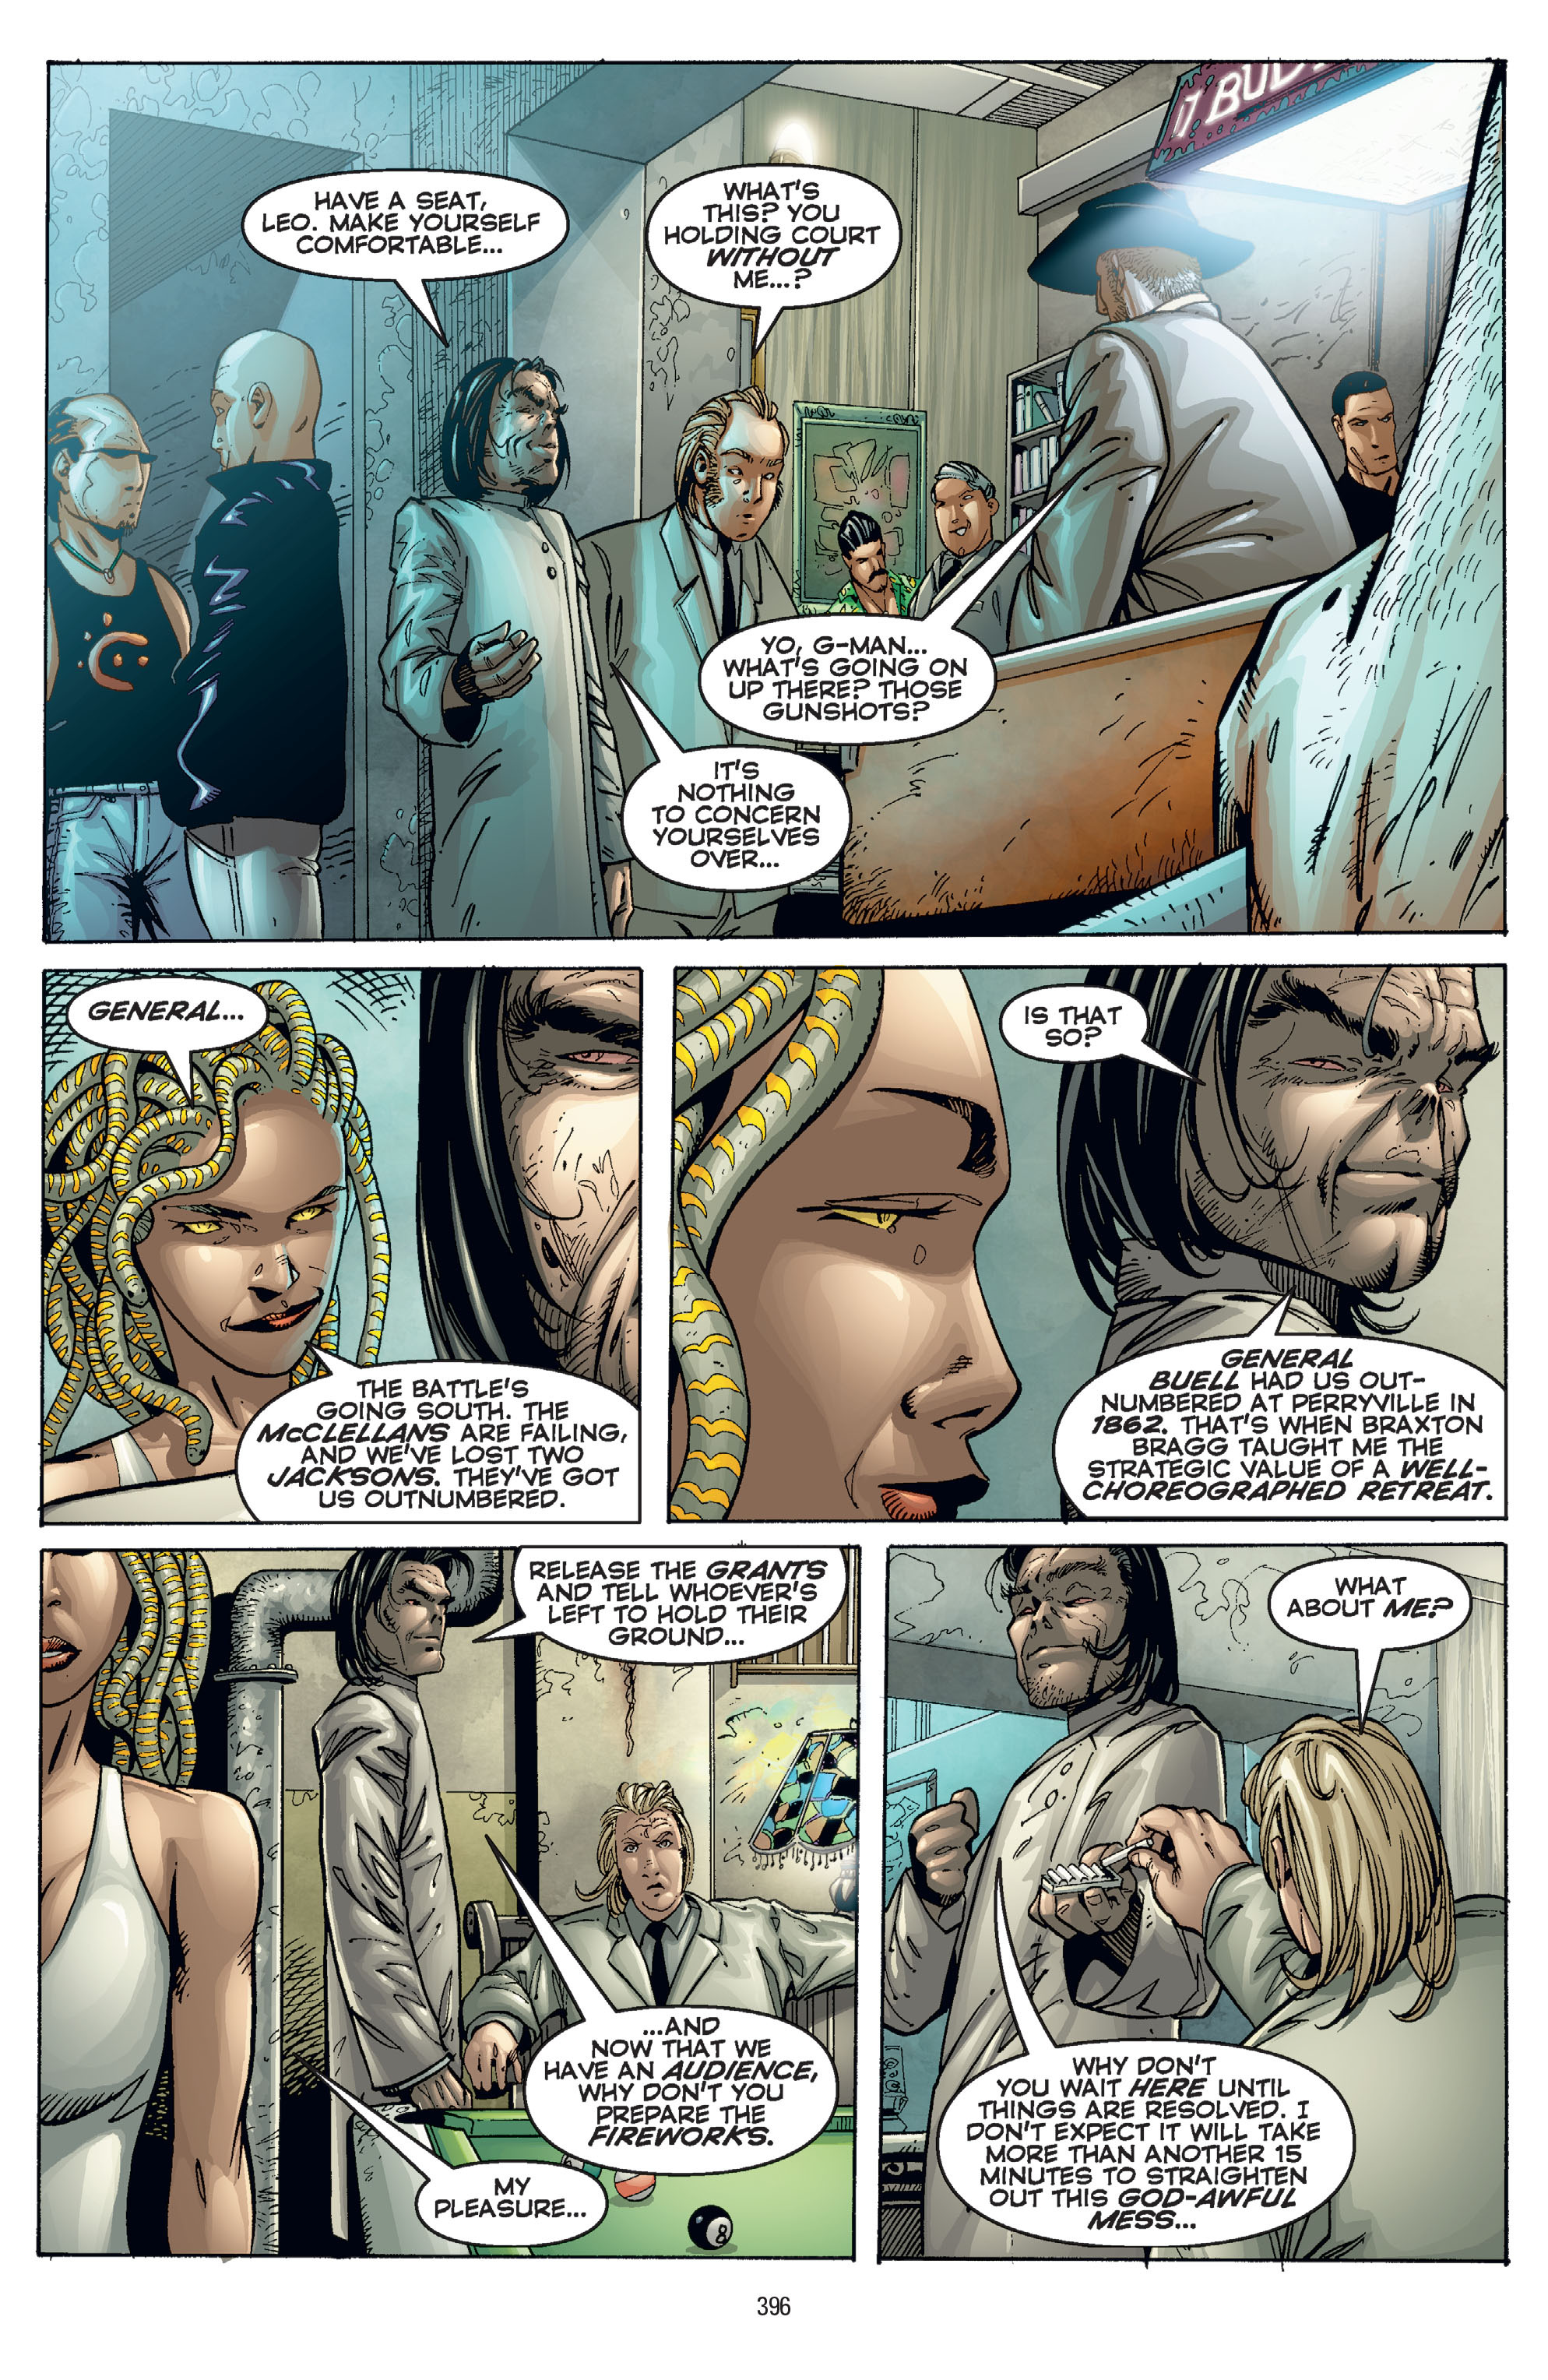 DC Comics/Dark Horse Comics: Justice League Full #1 - English 386